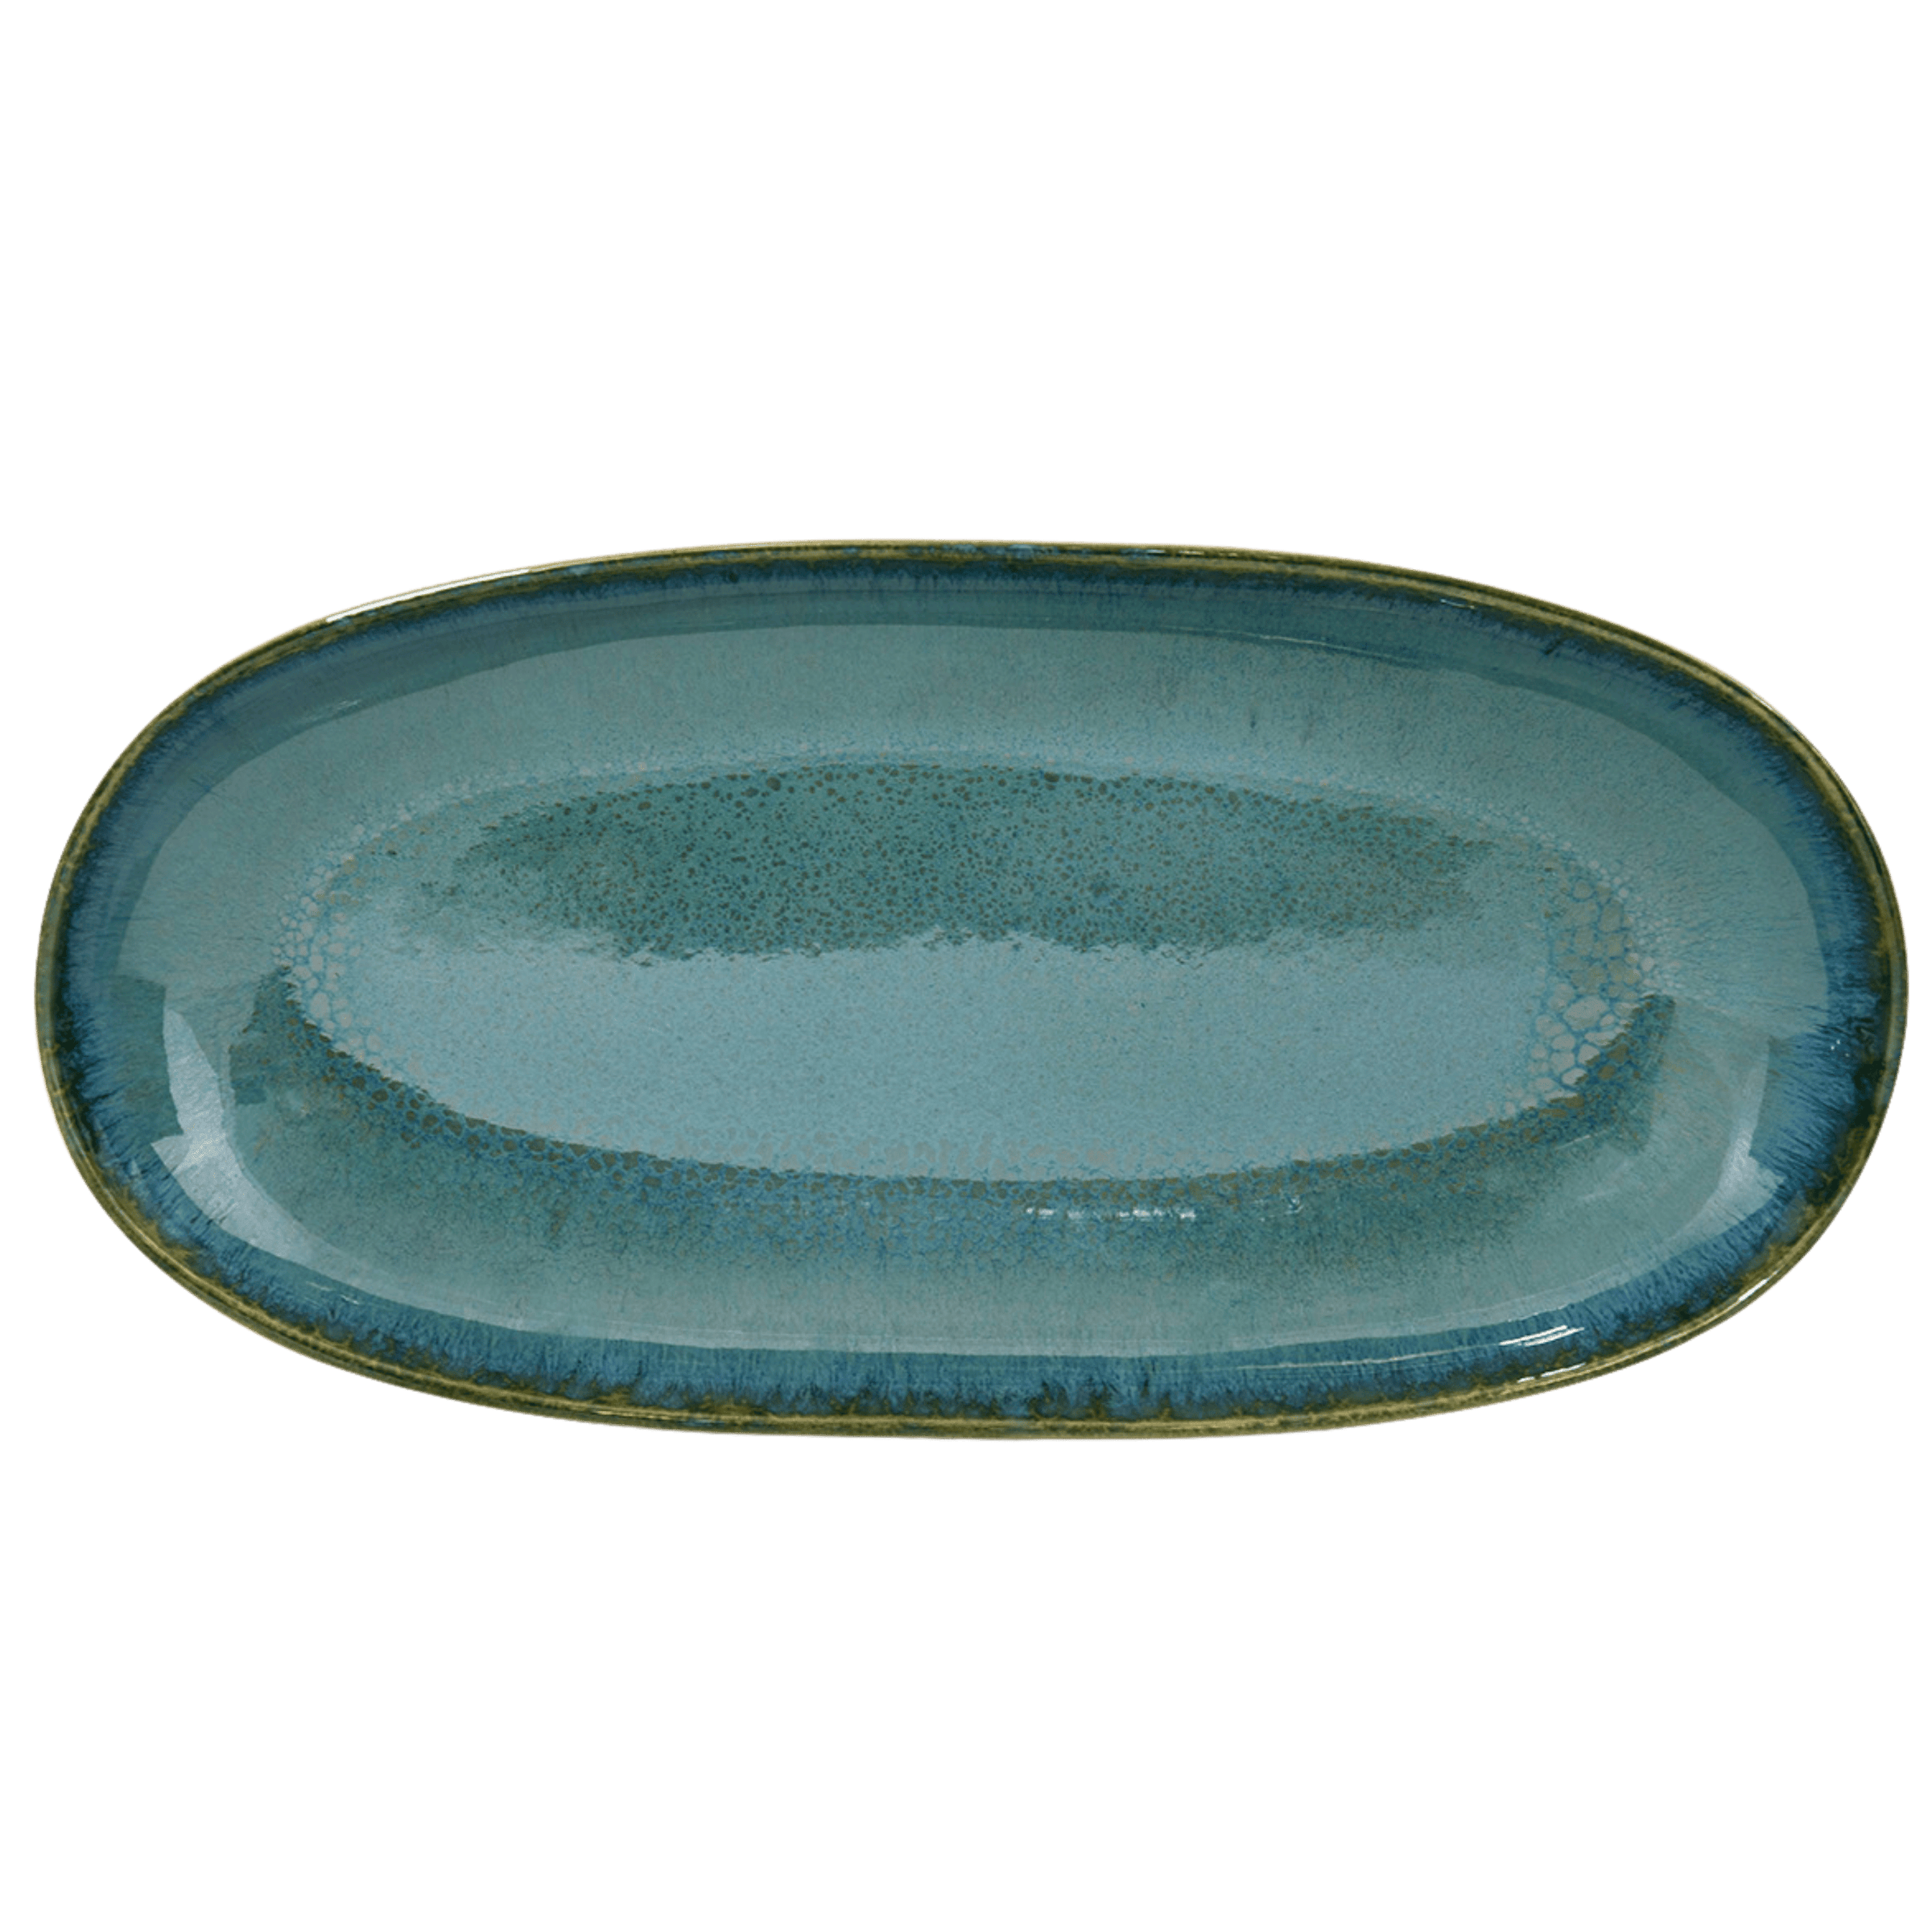 grüne keramik servierplatten aus portugal